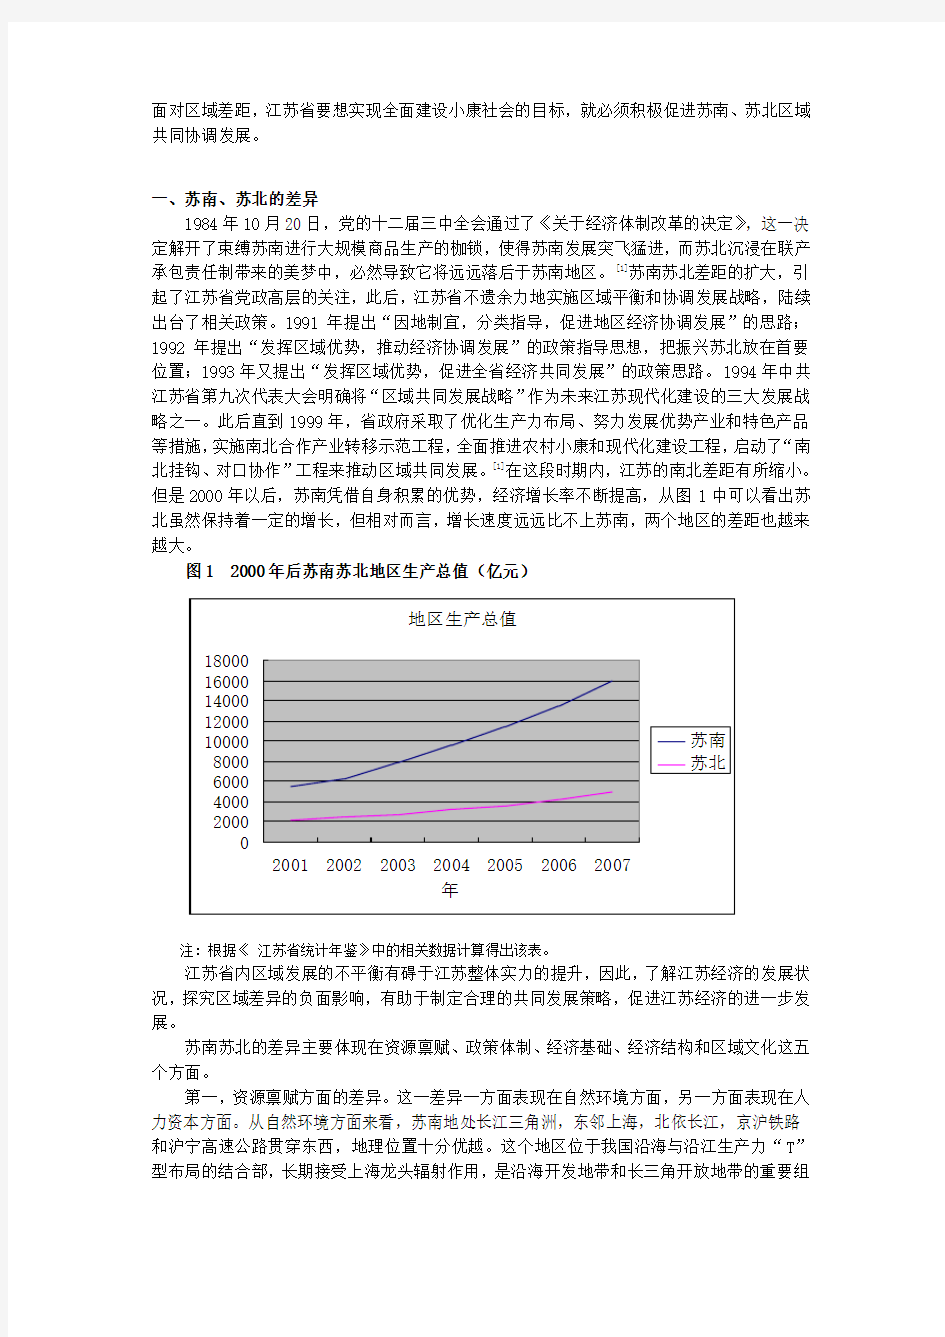 江苏区域经济发展差异及对策